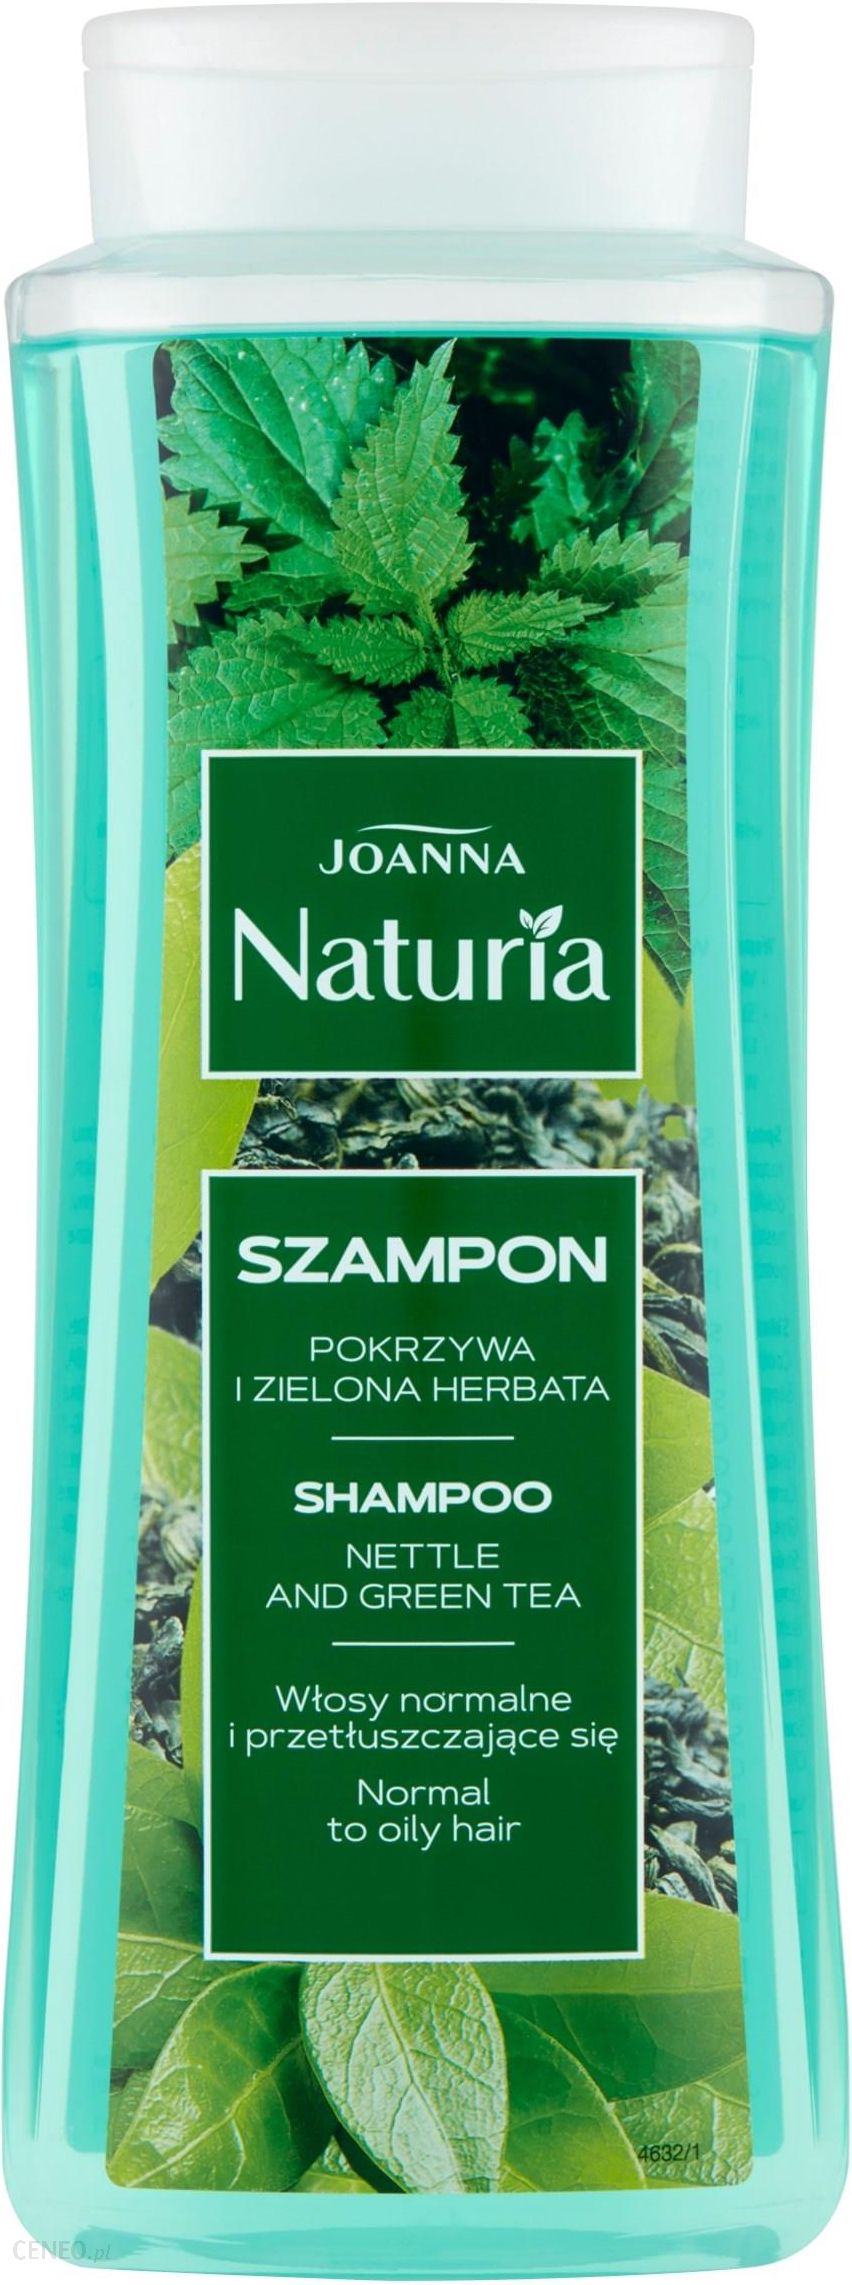 gdzie kupić szampon joanna naturia